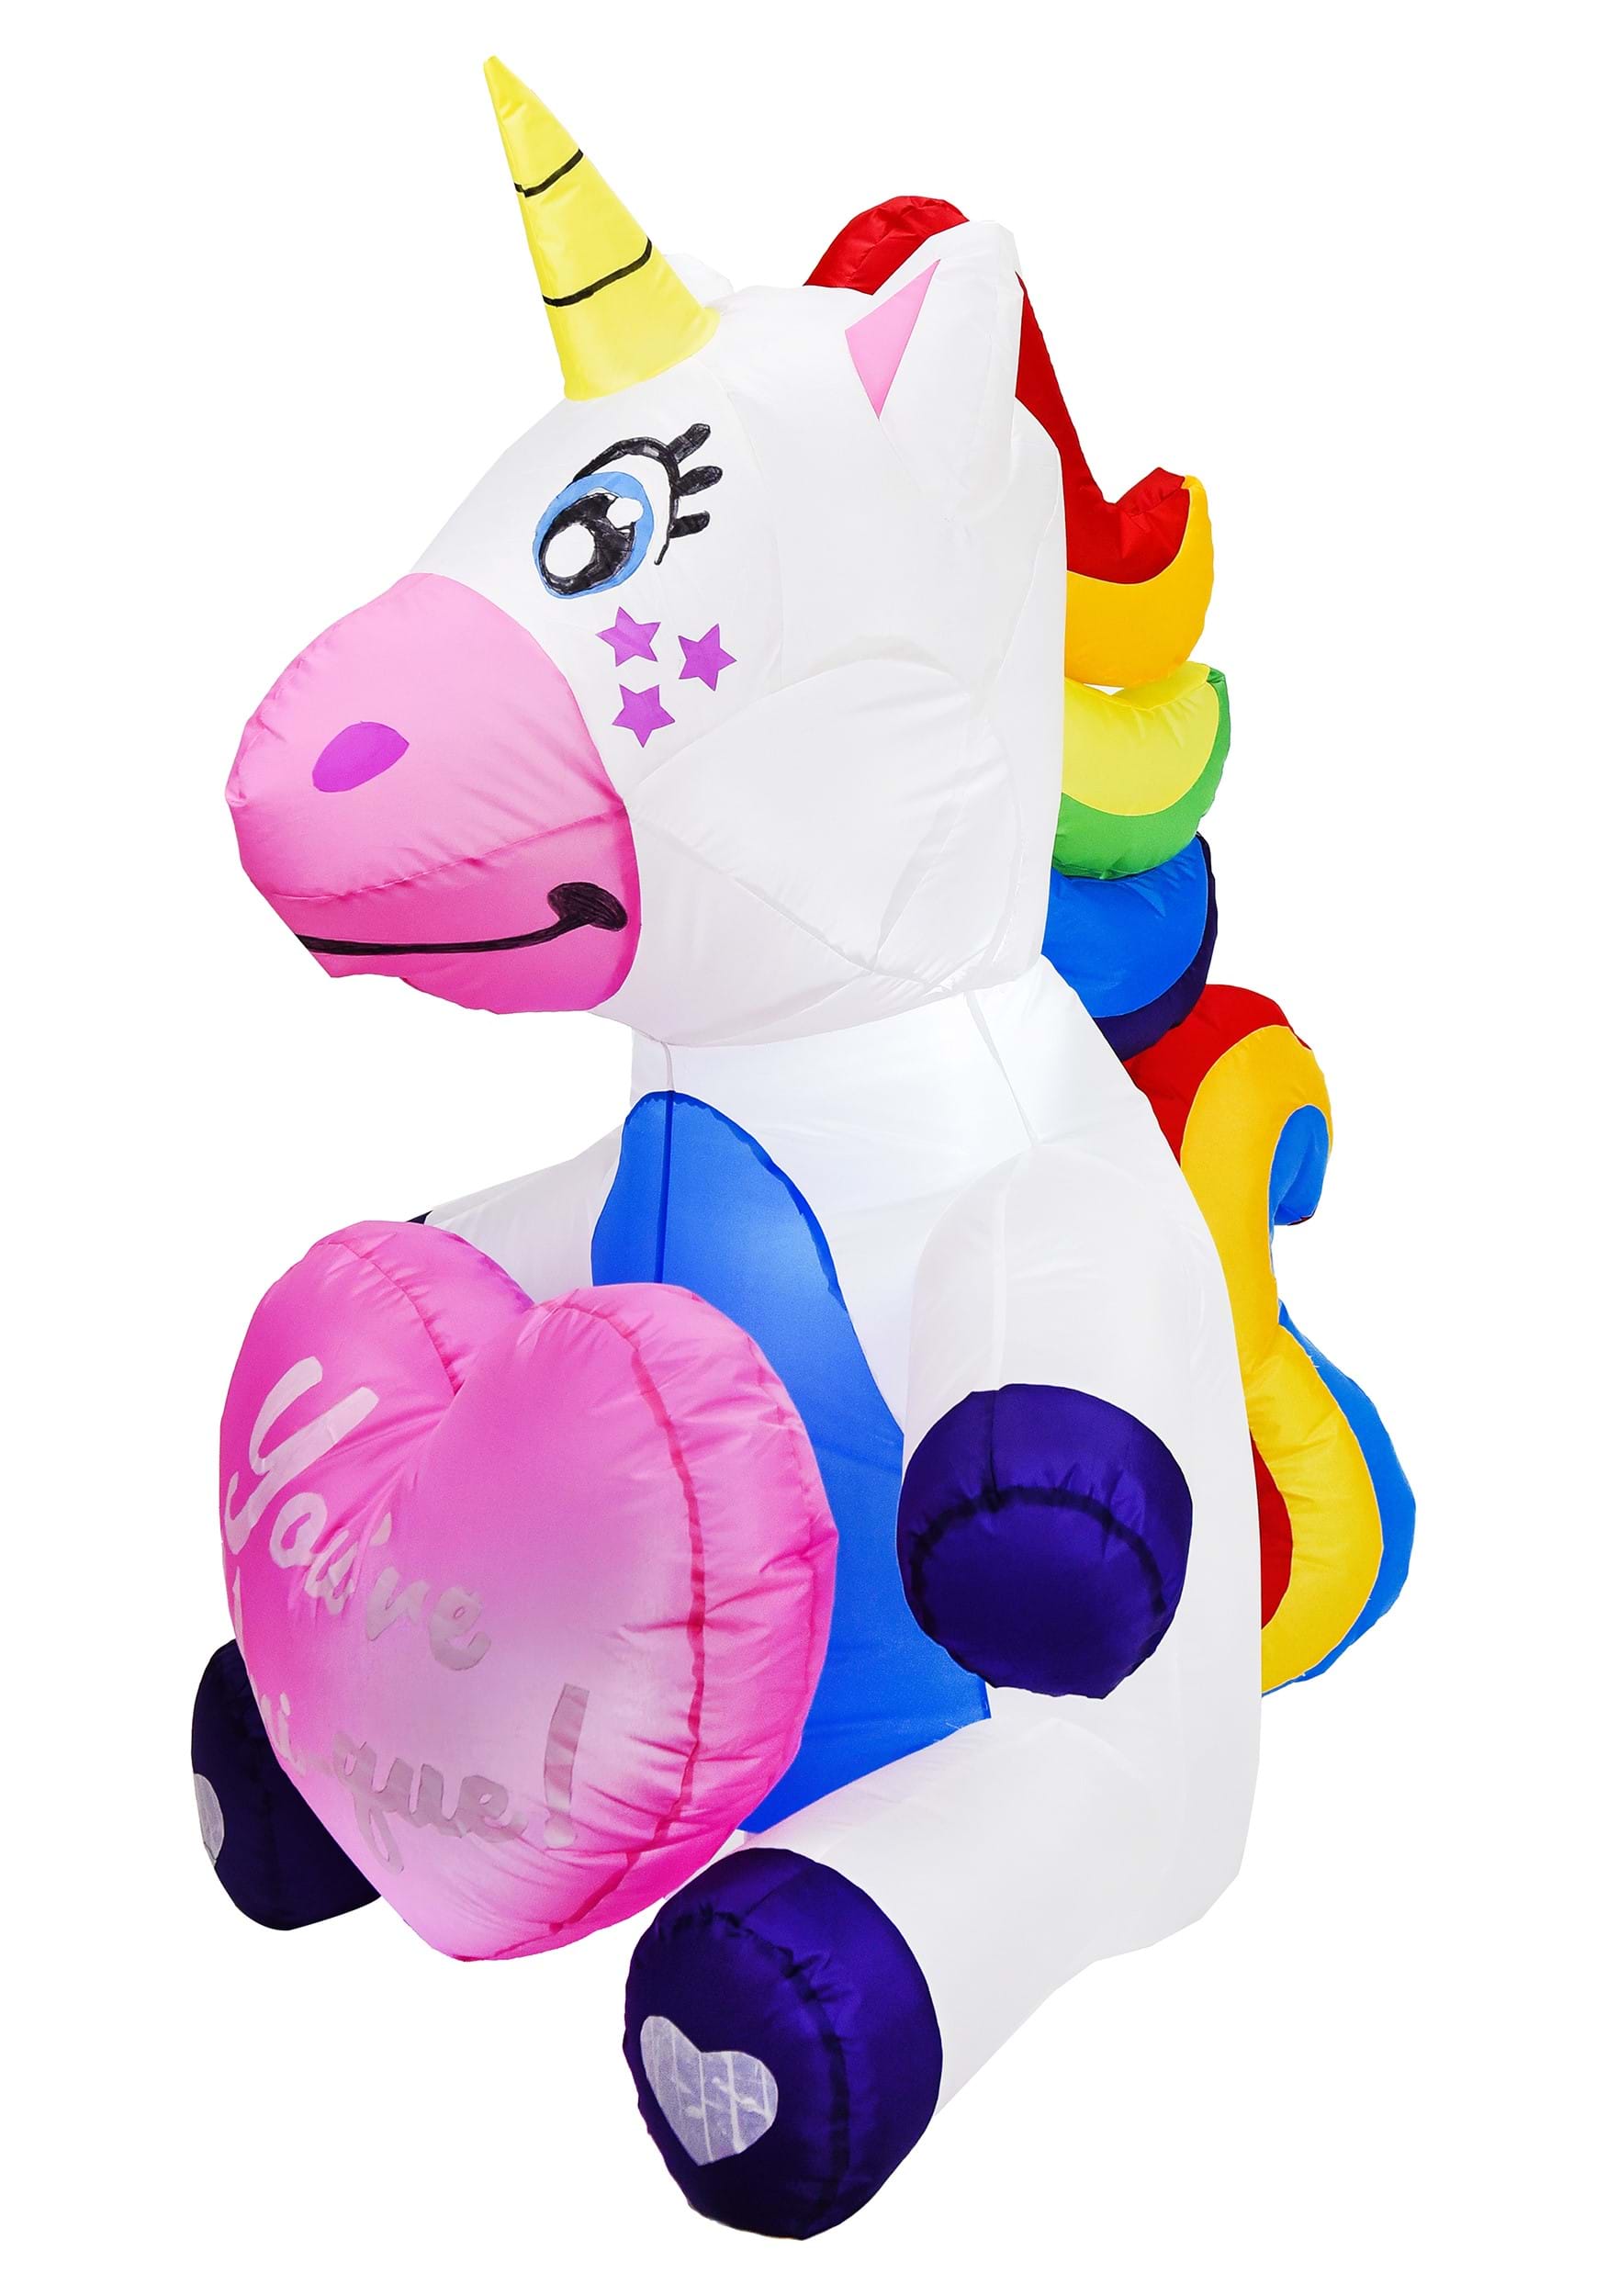 Amando la decoración inflable de unicornio de 5 pies de altura Multicolor Colombia